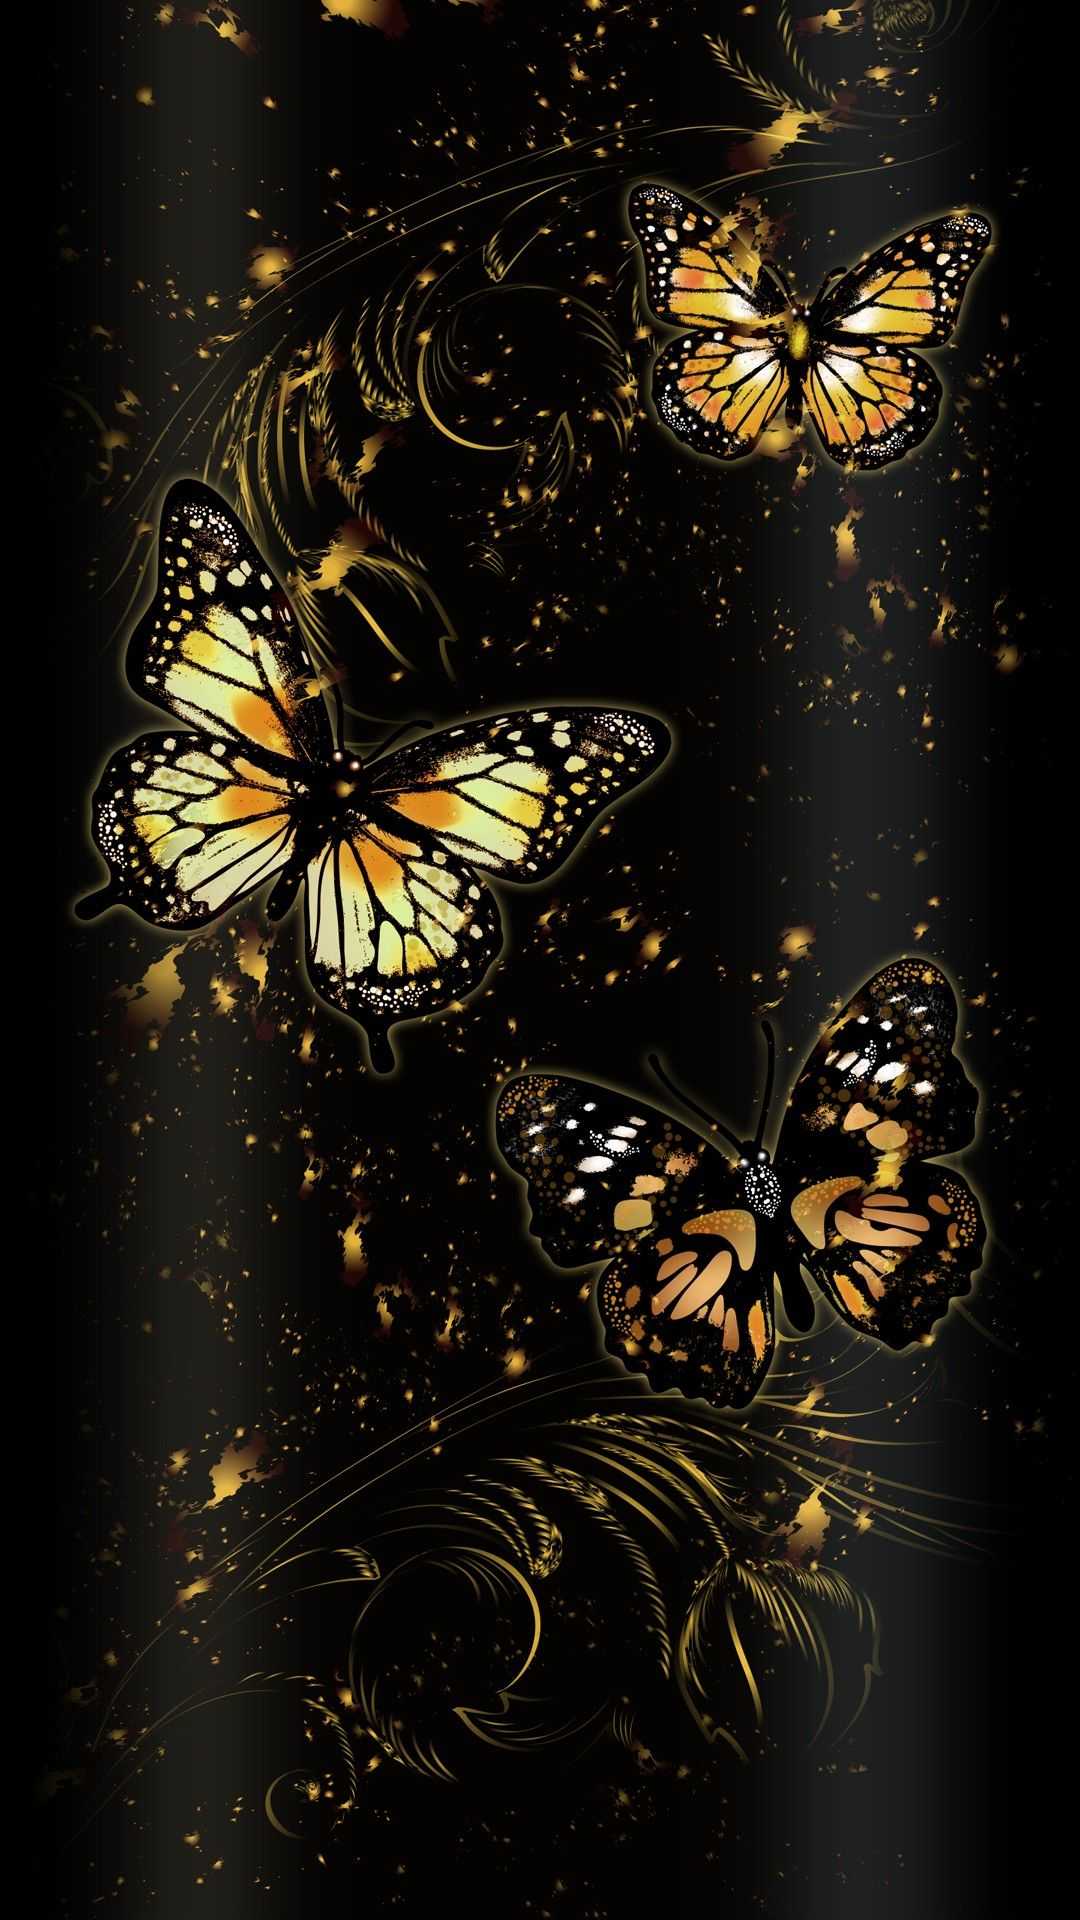 Butterfly Wallpaper 1